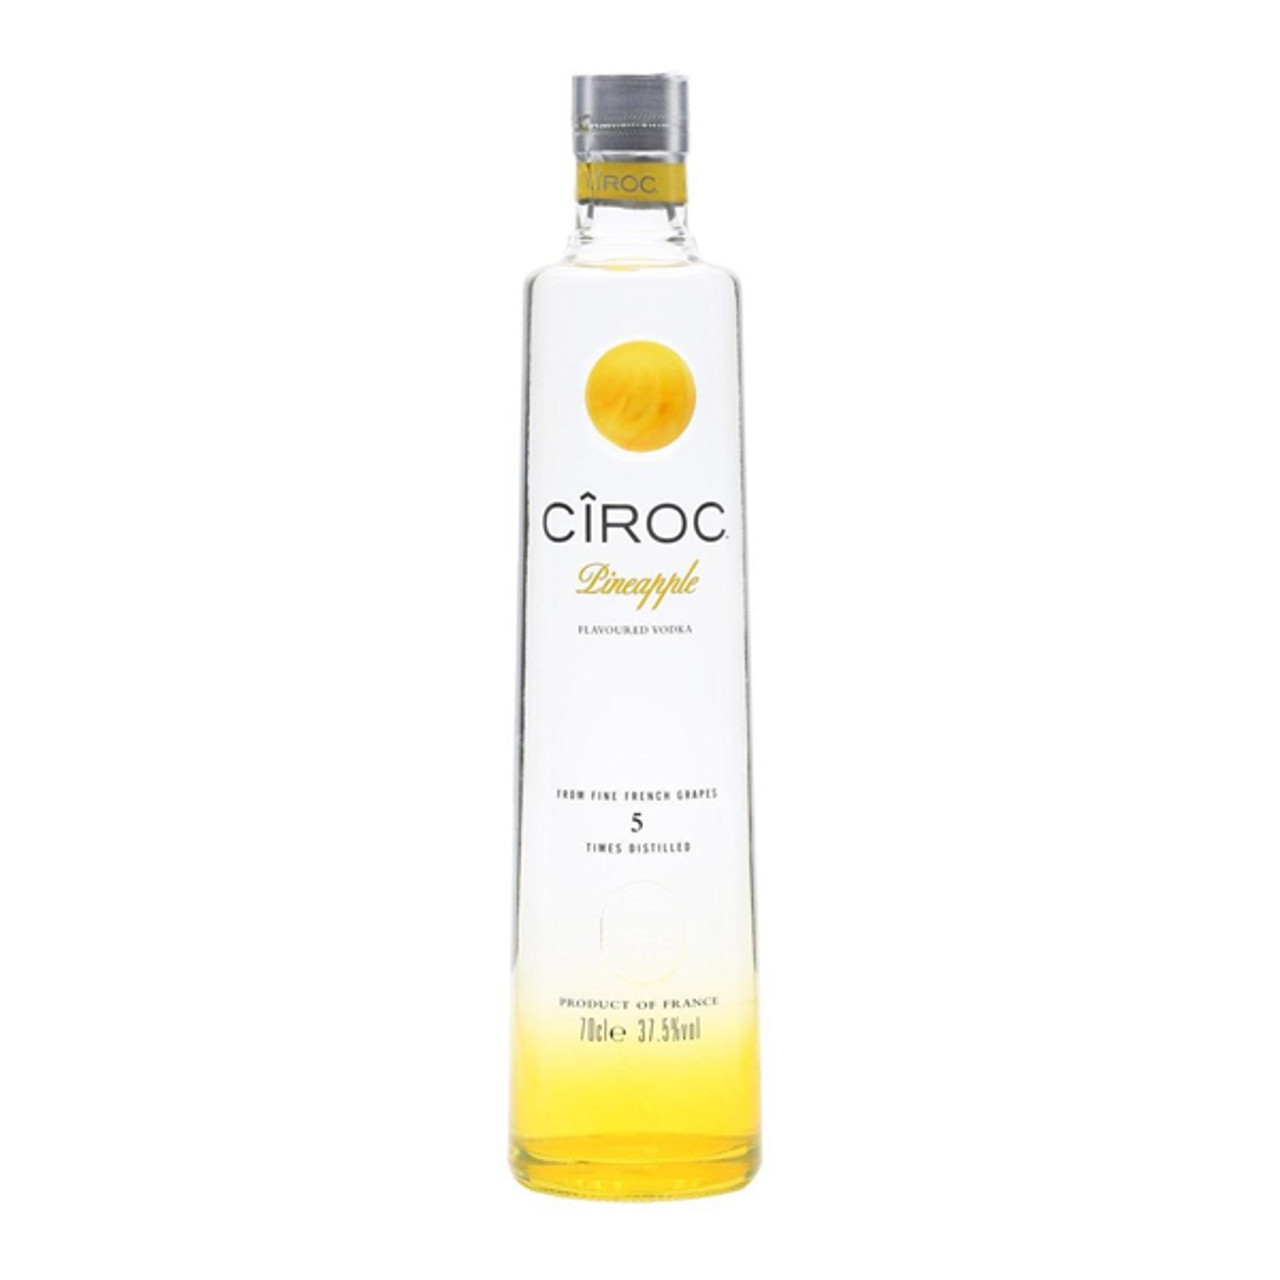 CIROC Vodka 750 ml